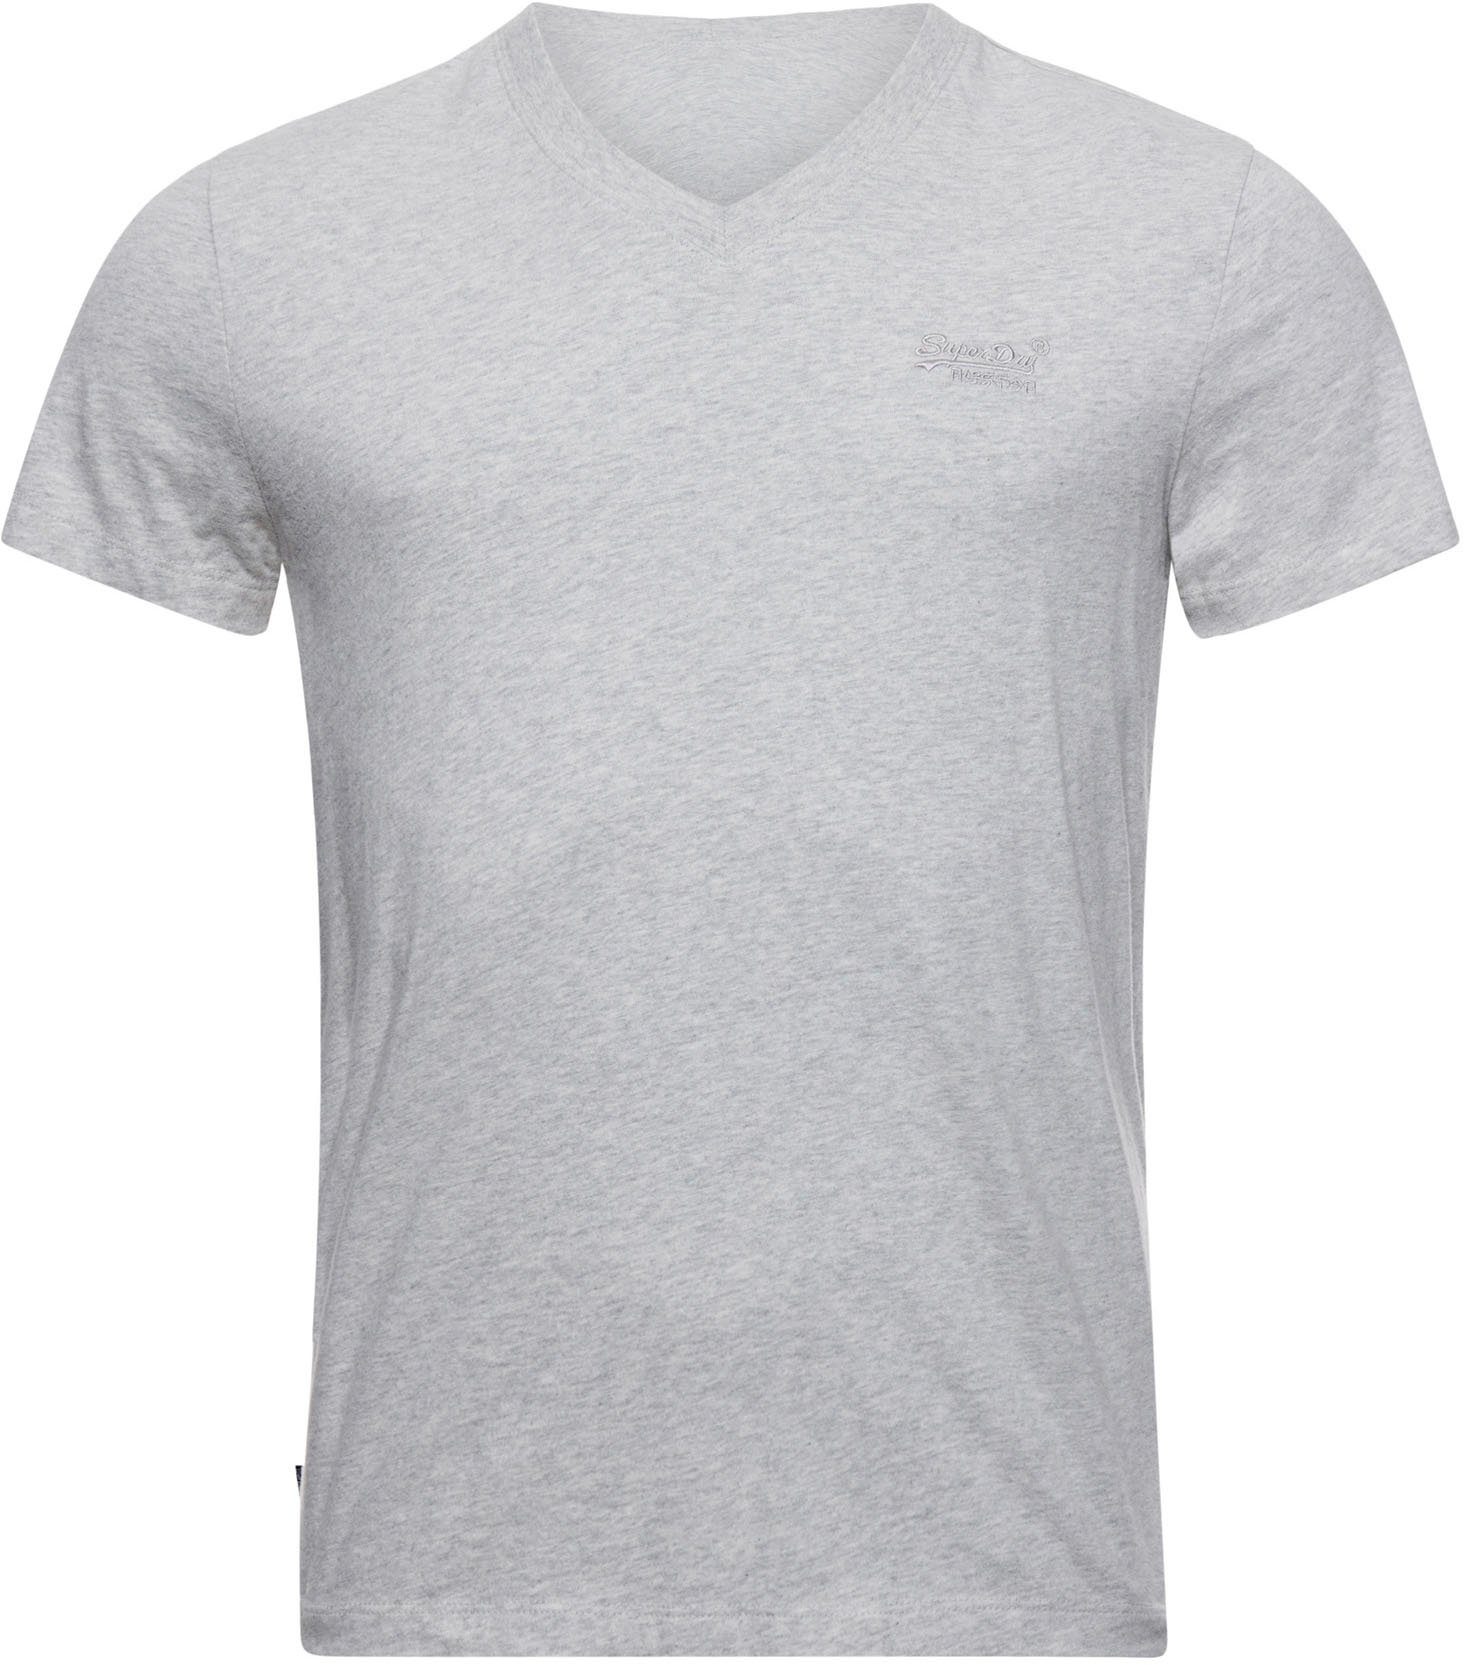 athletic LOGO V-Shirt EMB VINTAGE VEE grey Superdry marl